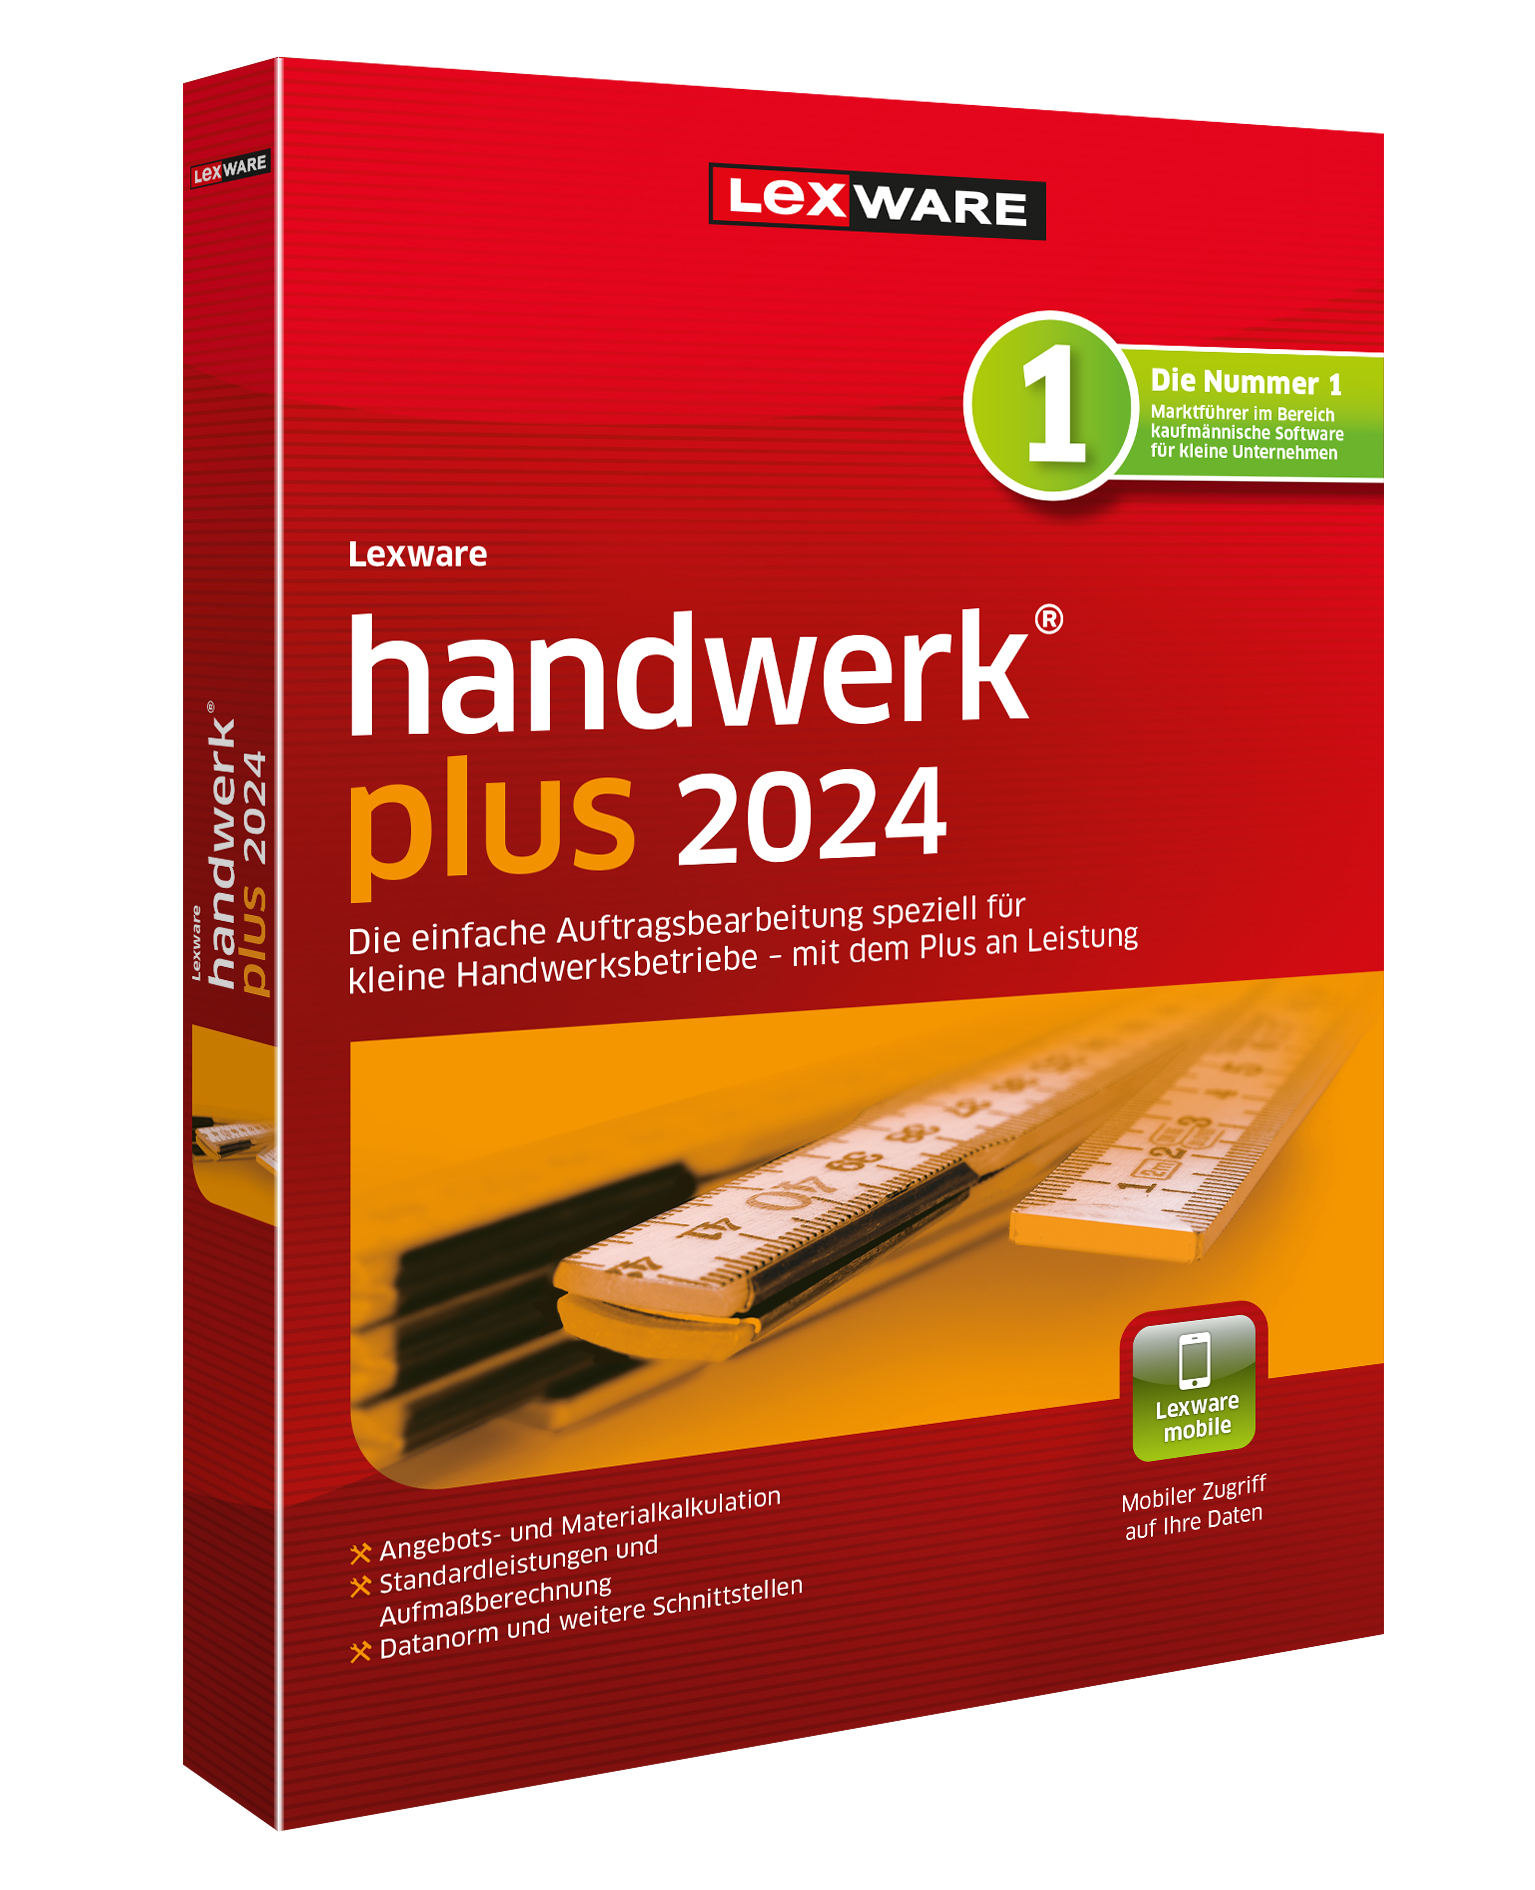 Lexware Handwerk plus it-structures gmbh